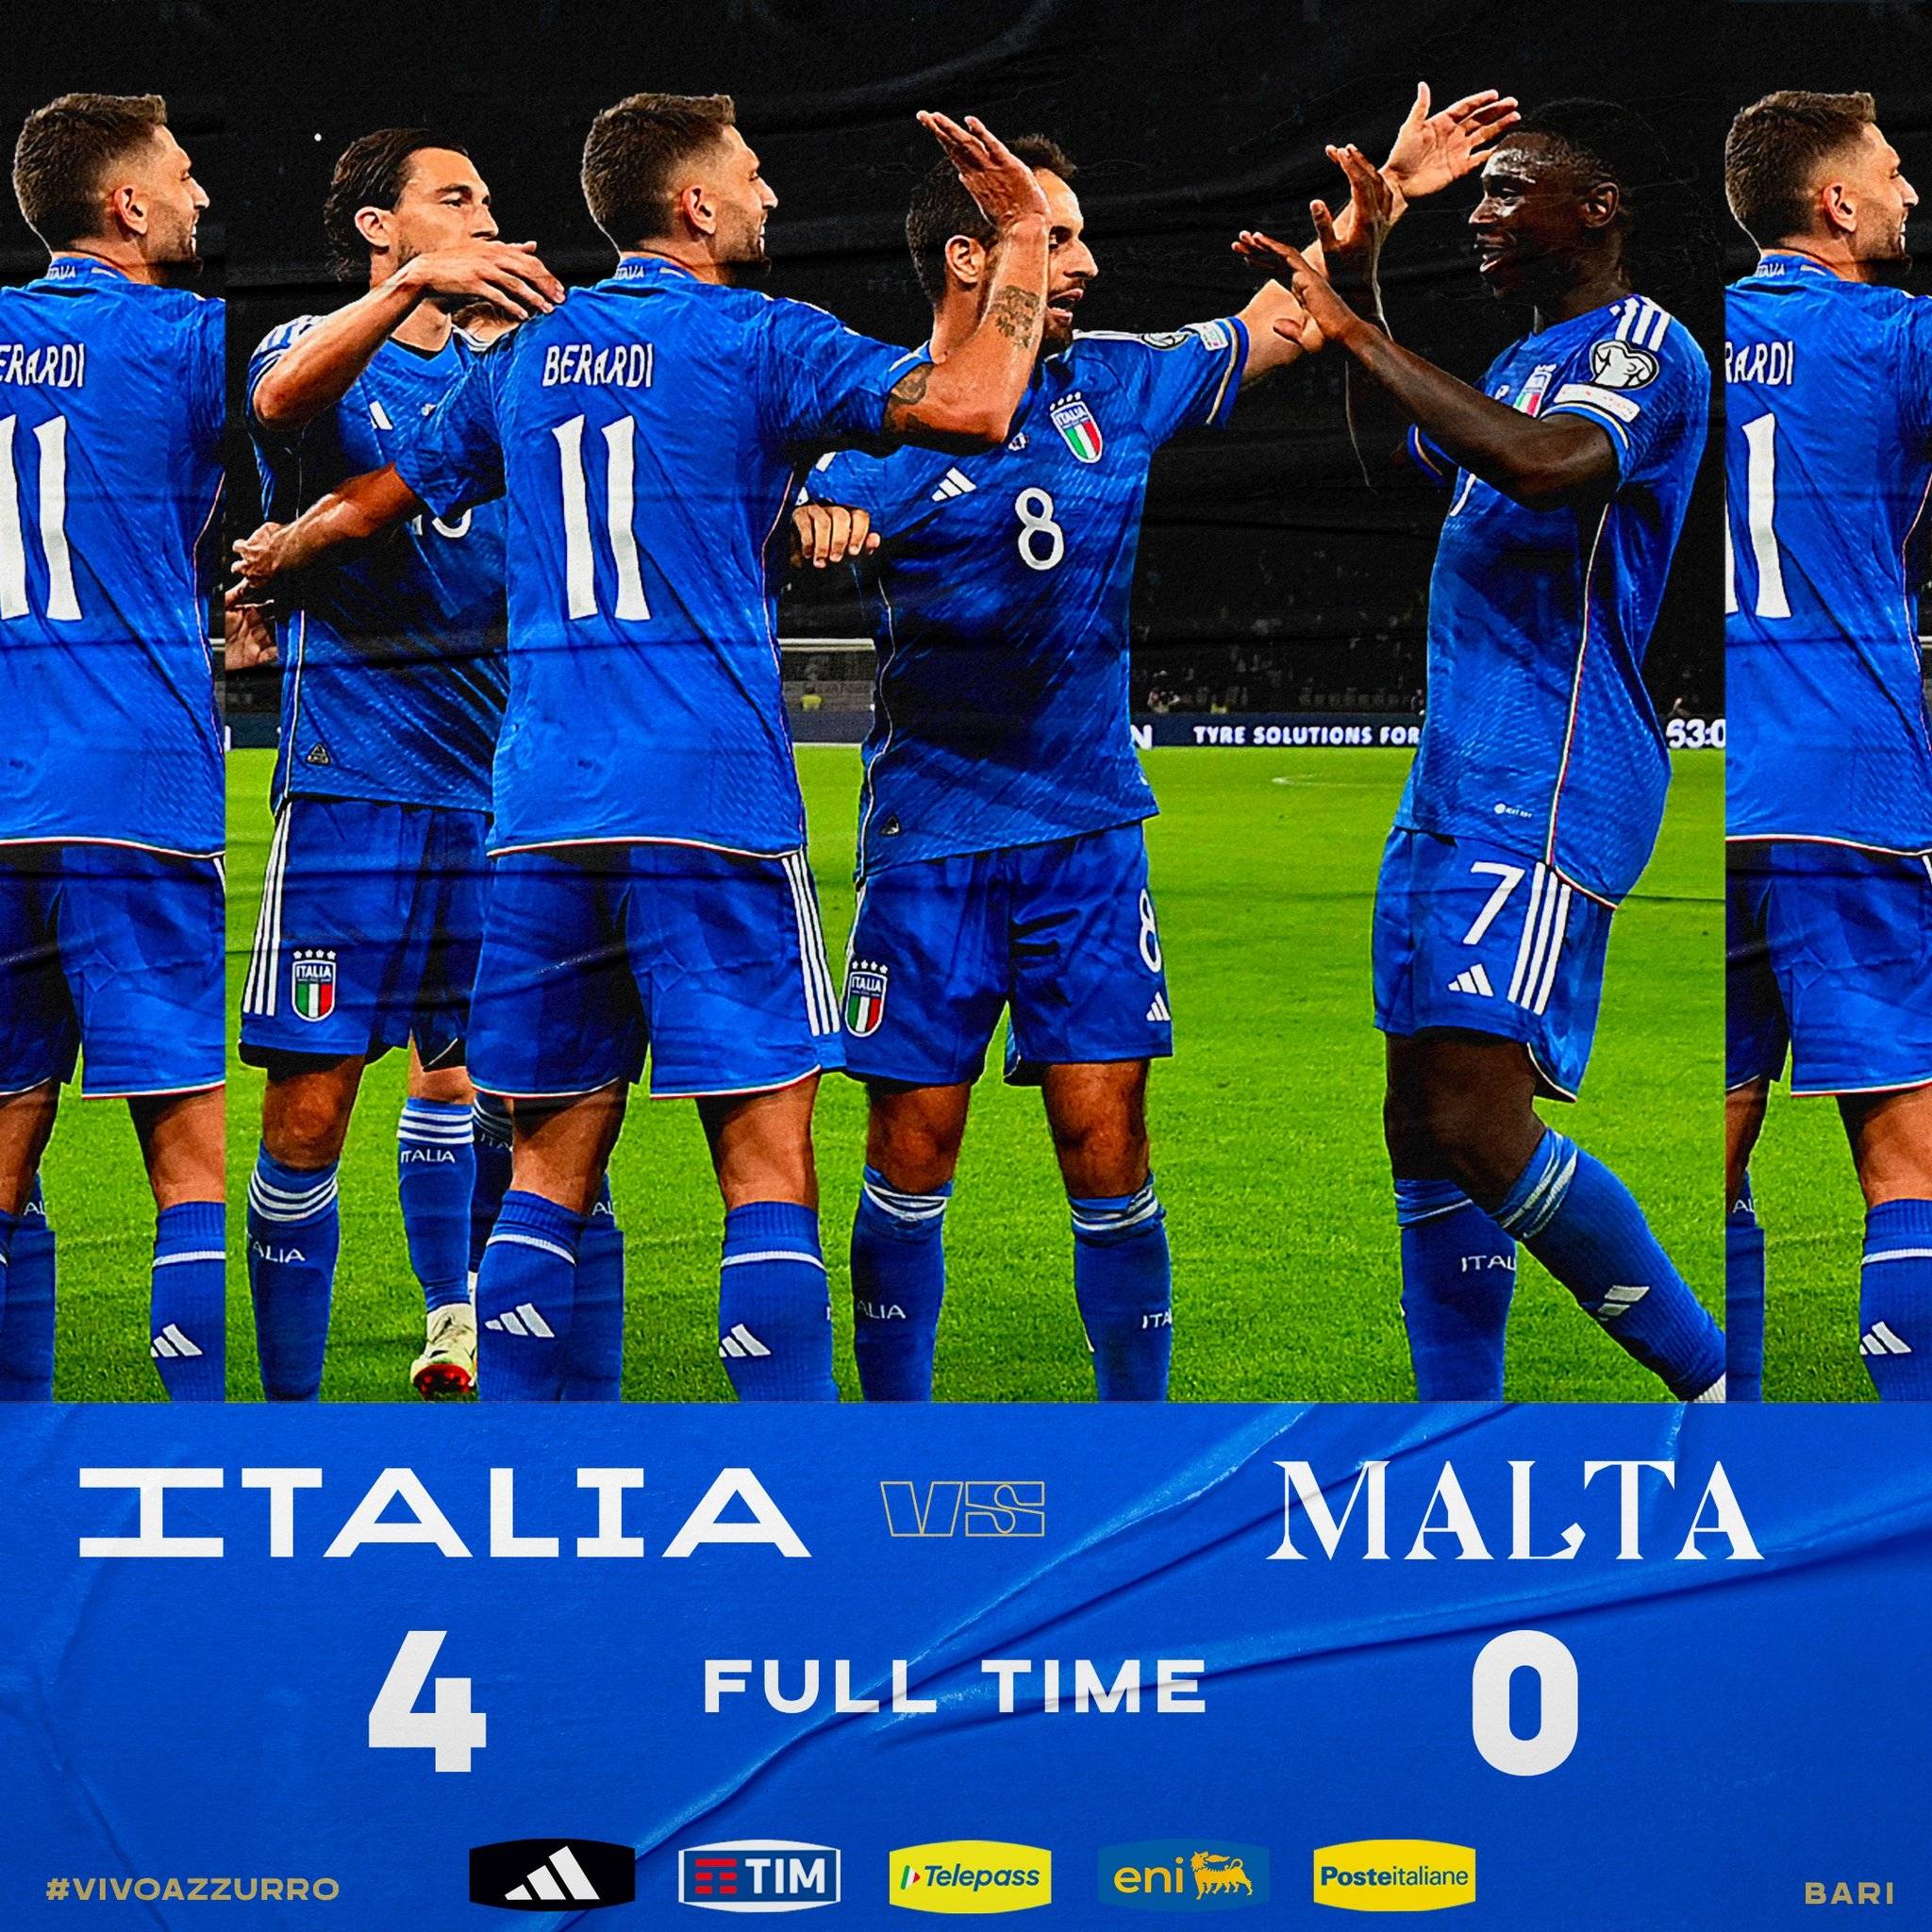 欧预赛-贝拉尔迪双响博纳文图拉处子球 意大利4-0马耳他-贝拉尔迪